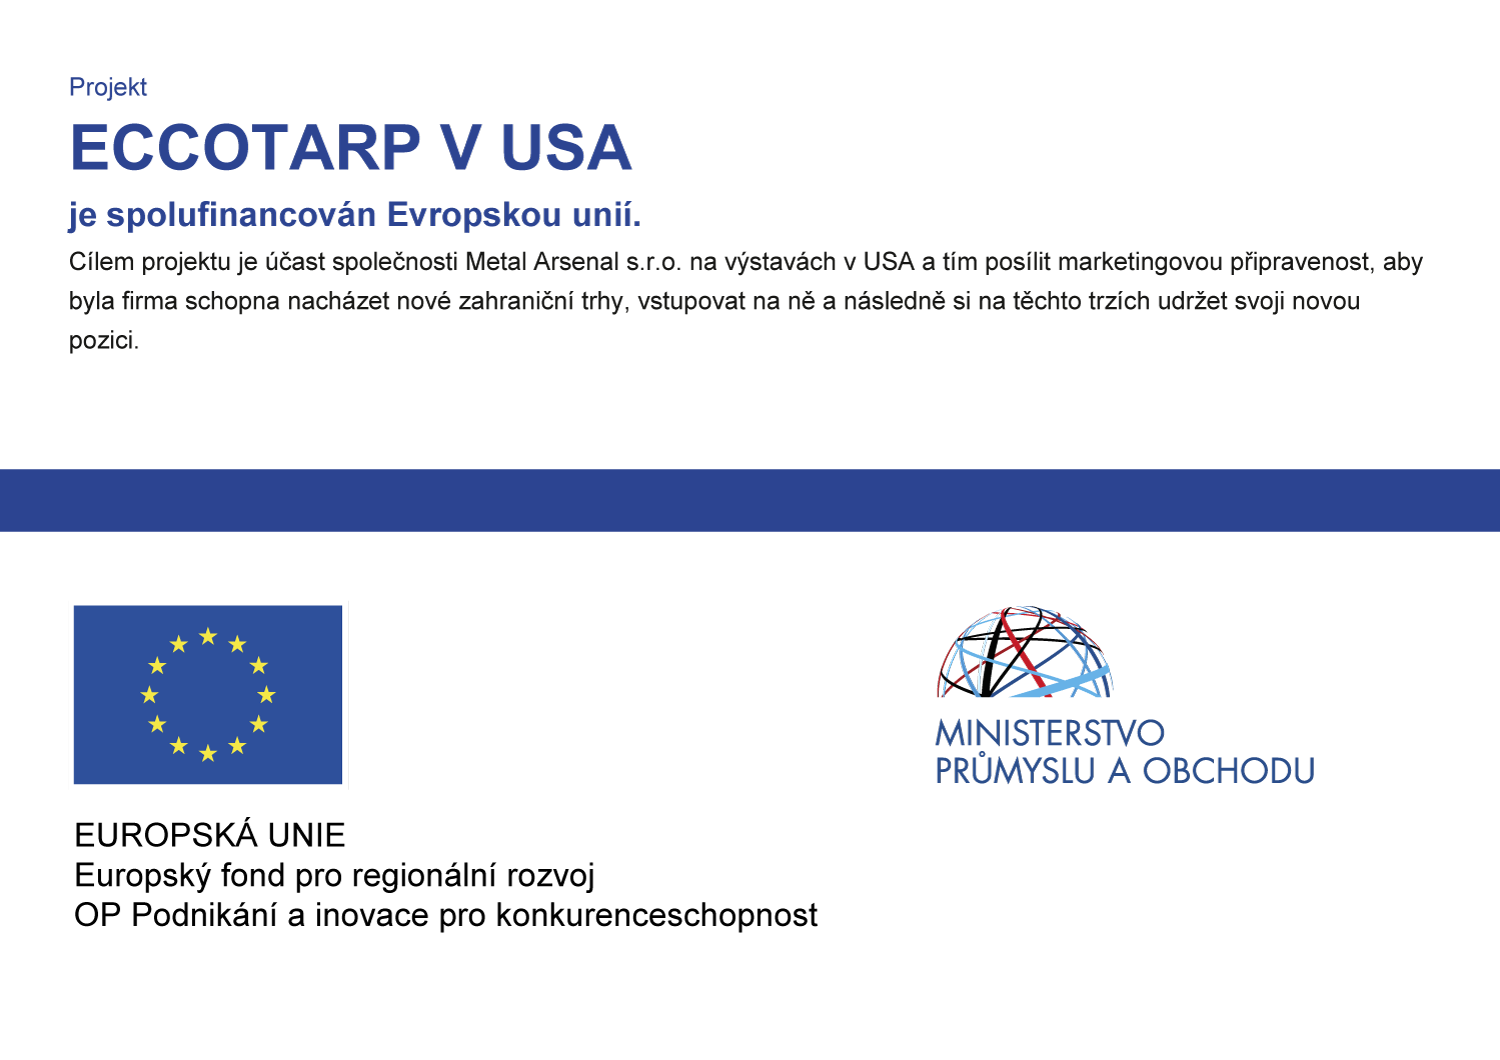 Projekt ECCOTARP v USA je spolufinancován Evropskou unií